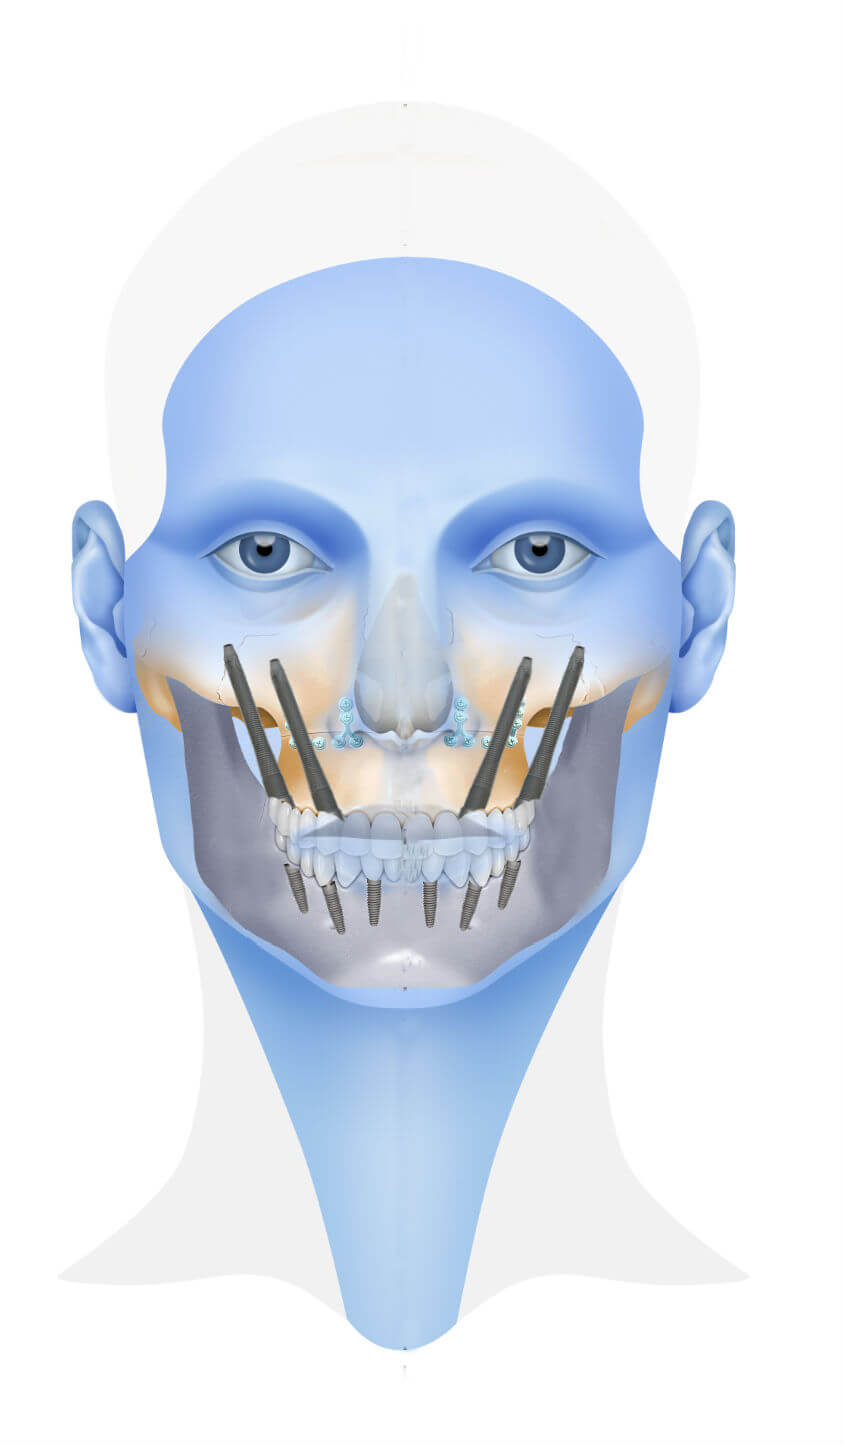 els 3 valors diferencials de l’institut maxil·lofacial